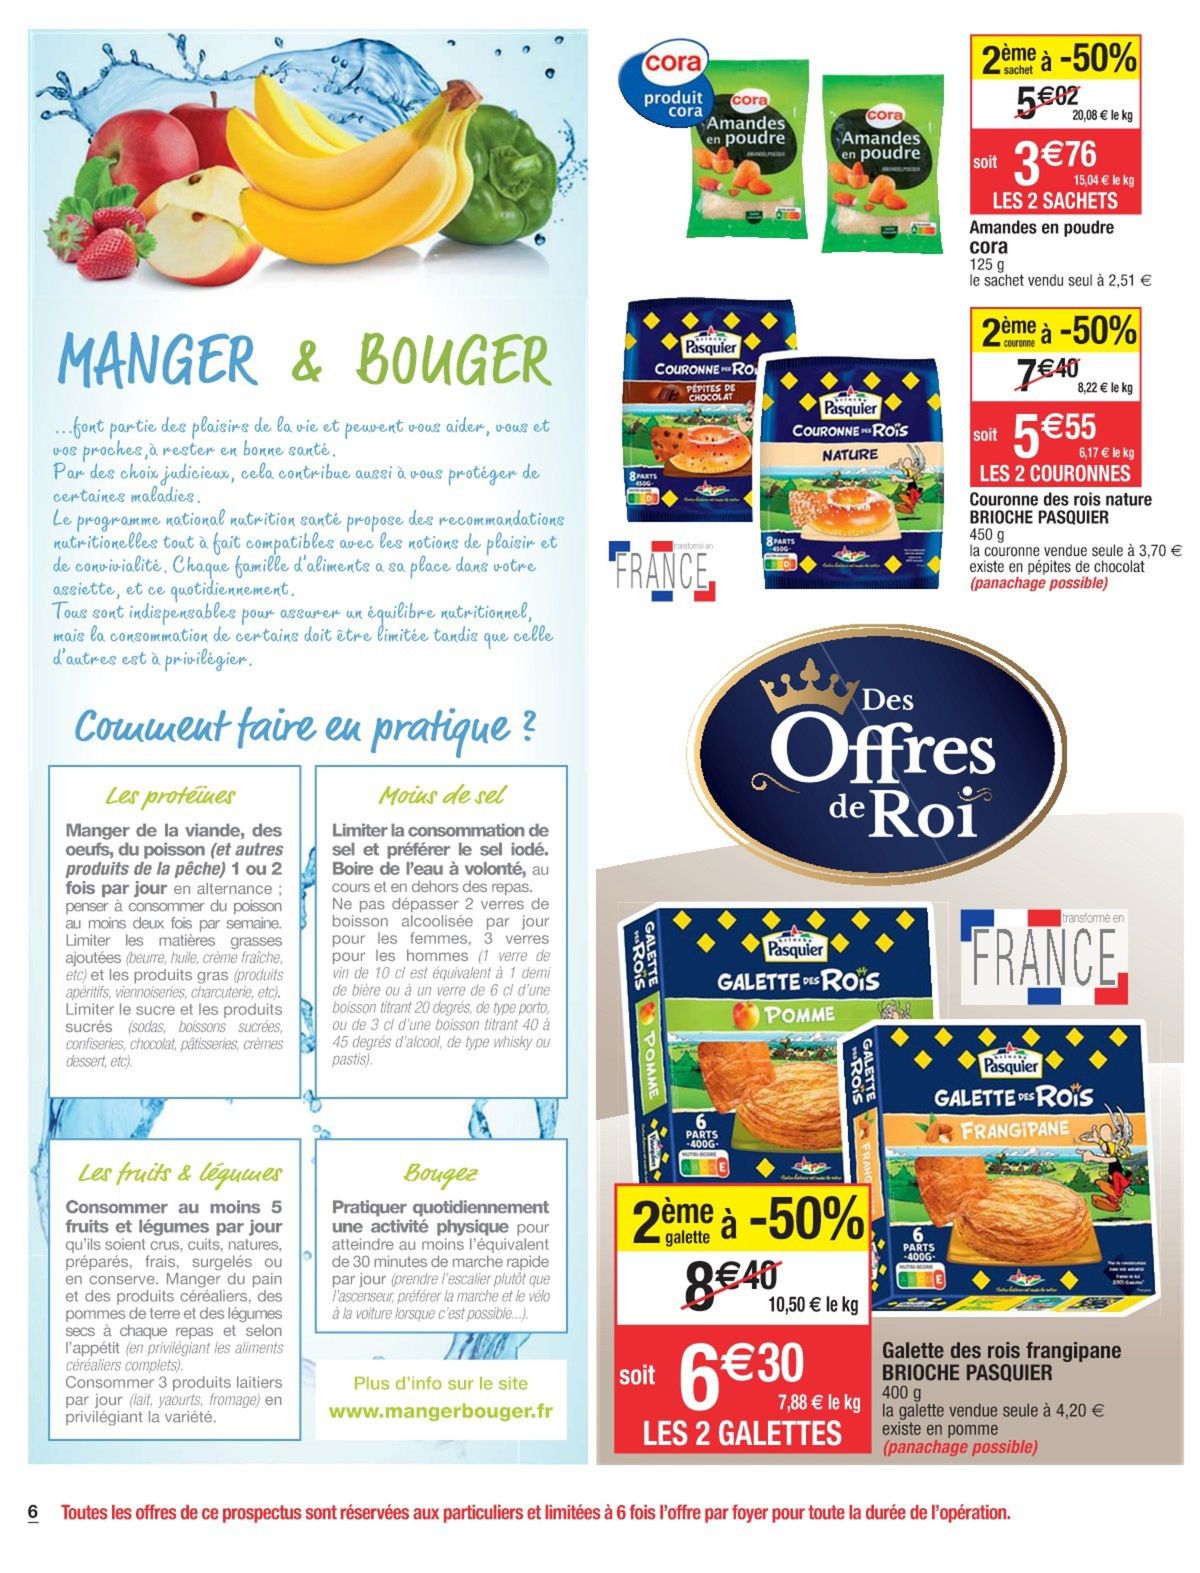 Catalogue Des offres de Roi, page 00036